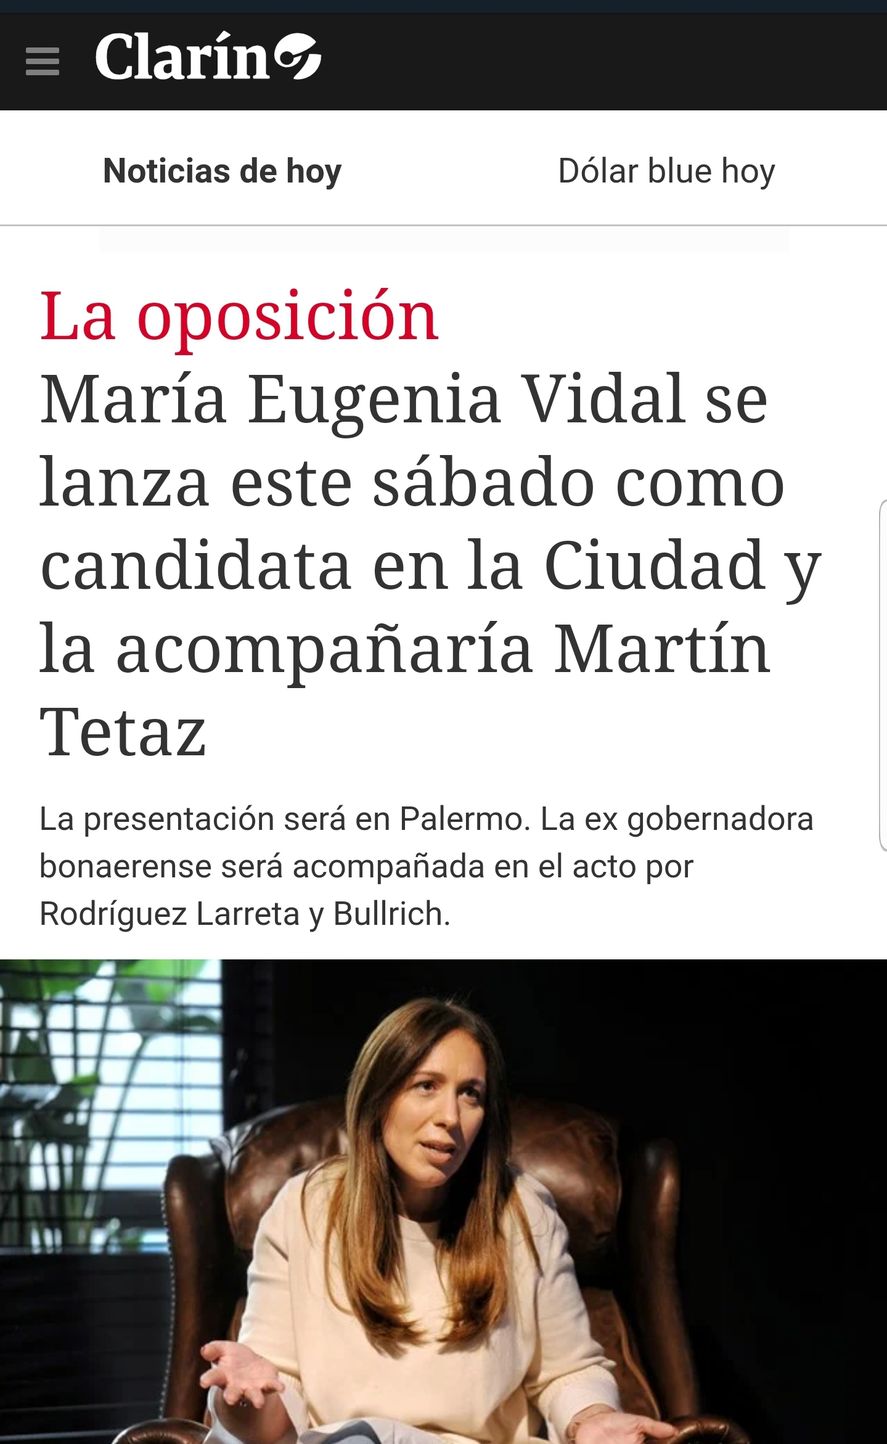 De este modo el diario Clarín destaca la integración de su empleado Martín Tetaz como segundo en las listas de candidatos a diputados por Capital Federal, junto a María Eugenia Vidal 